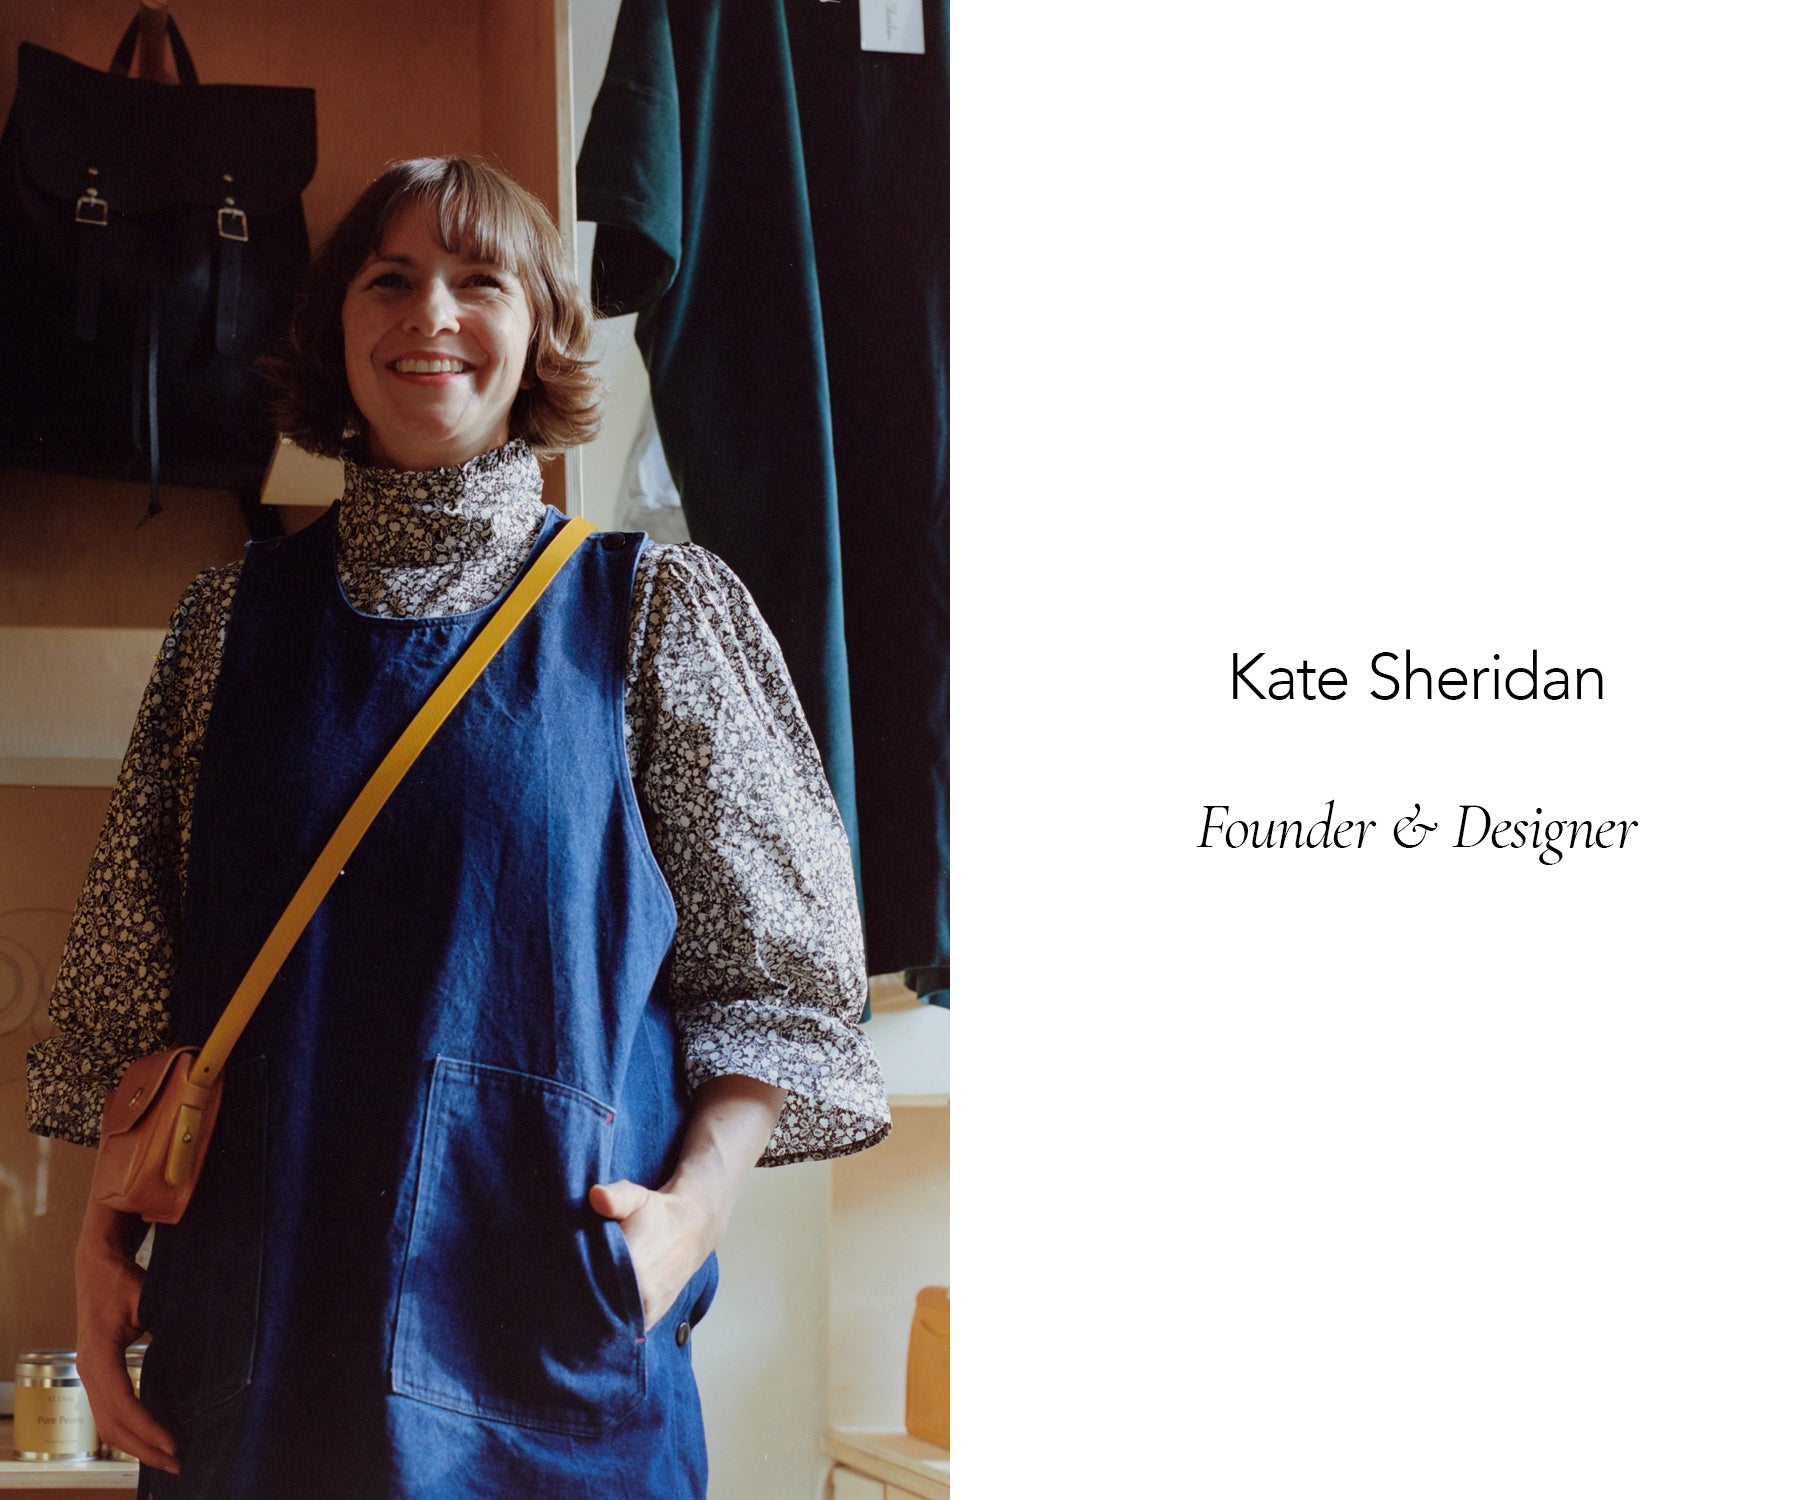 Kate Sheridan